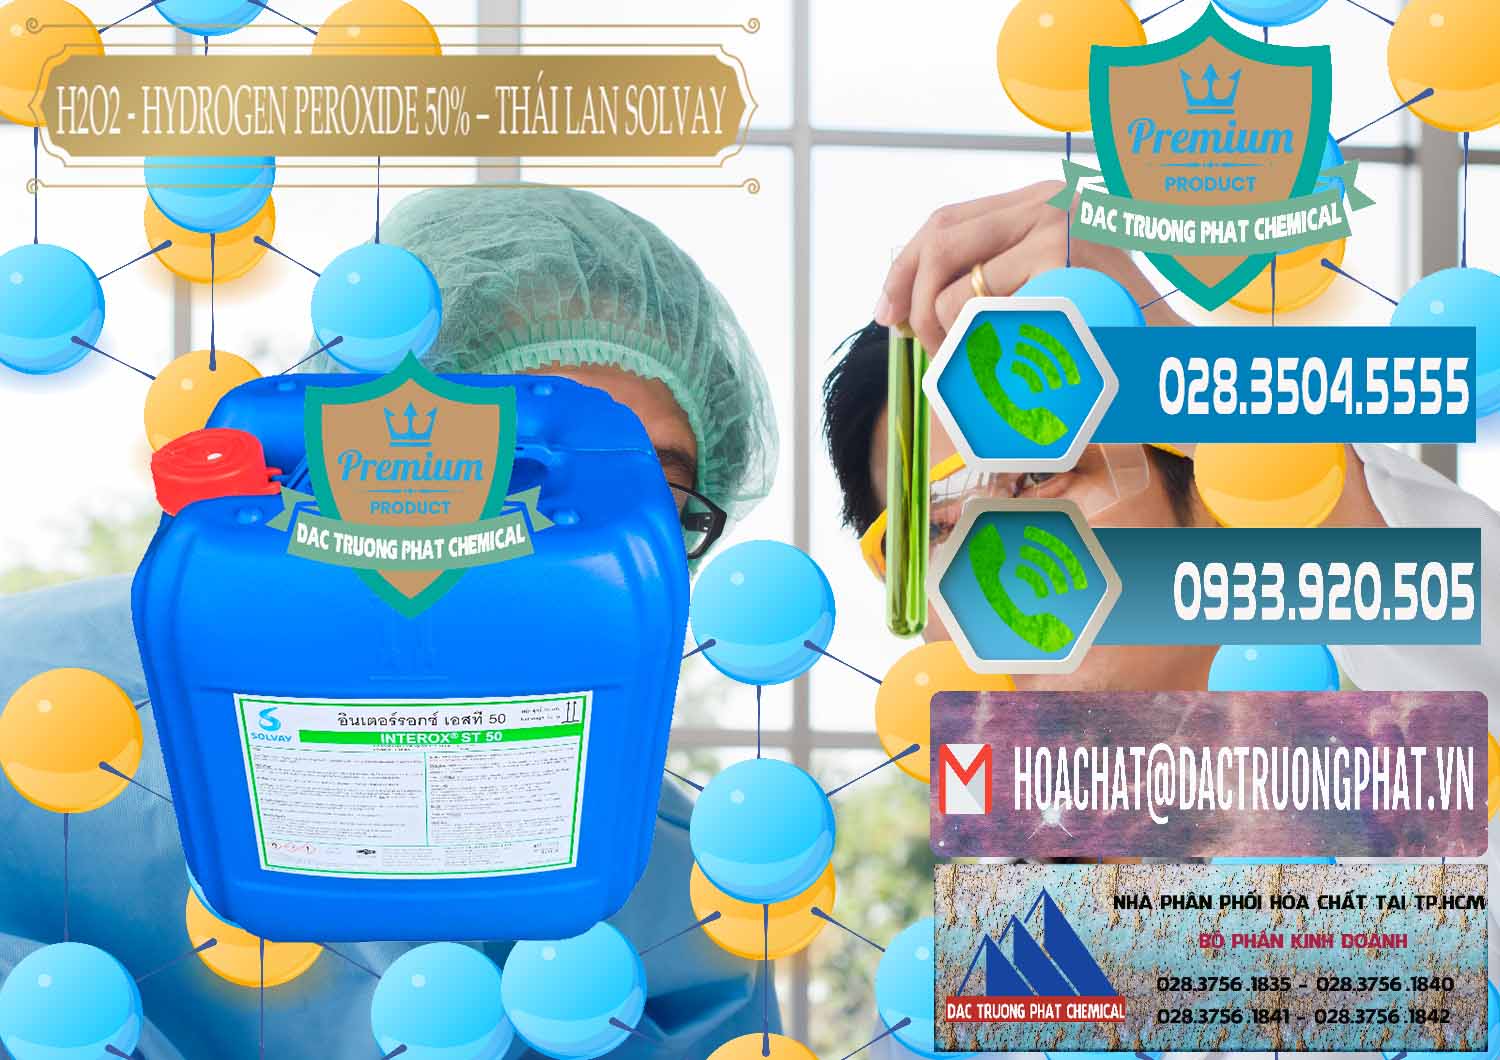 Nơi phân phối & bán H2O2 - Hydrogen Peroxide 50% Thái Lan Solvay - 0068 - Chuyên phân phối _ nhập khẩu hóa chất tại TP.HCM - congtyhoachat.net